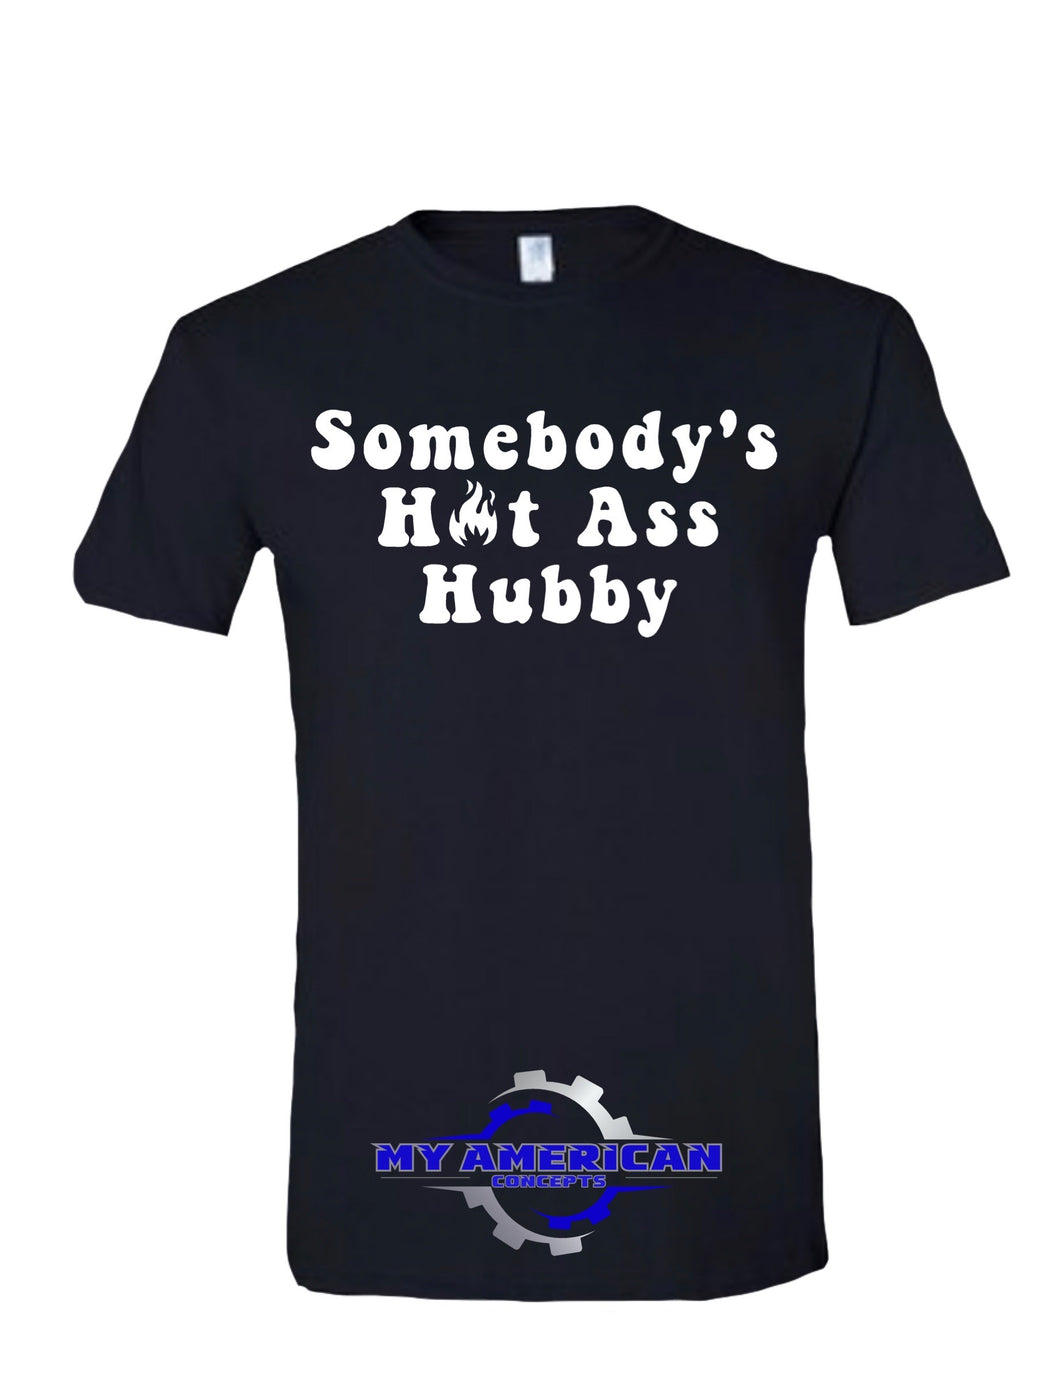 Somebody's Hot Ass Hubby- Men’s t-shirt!